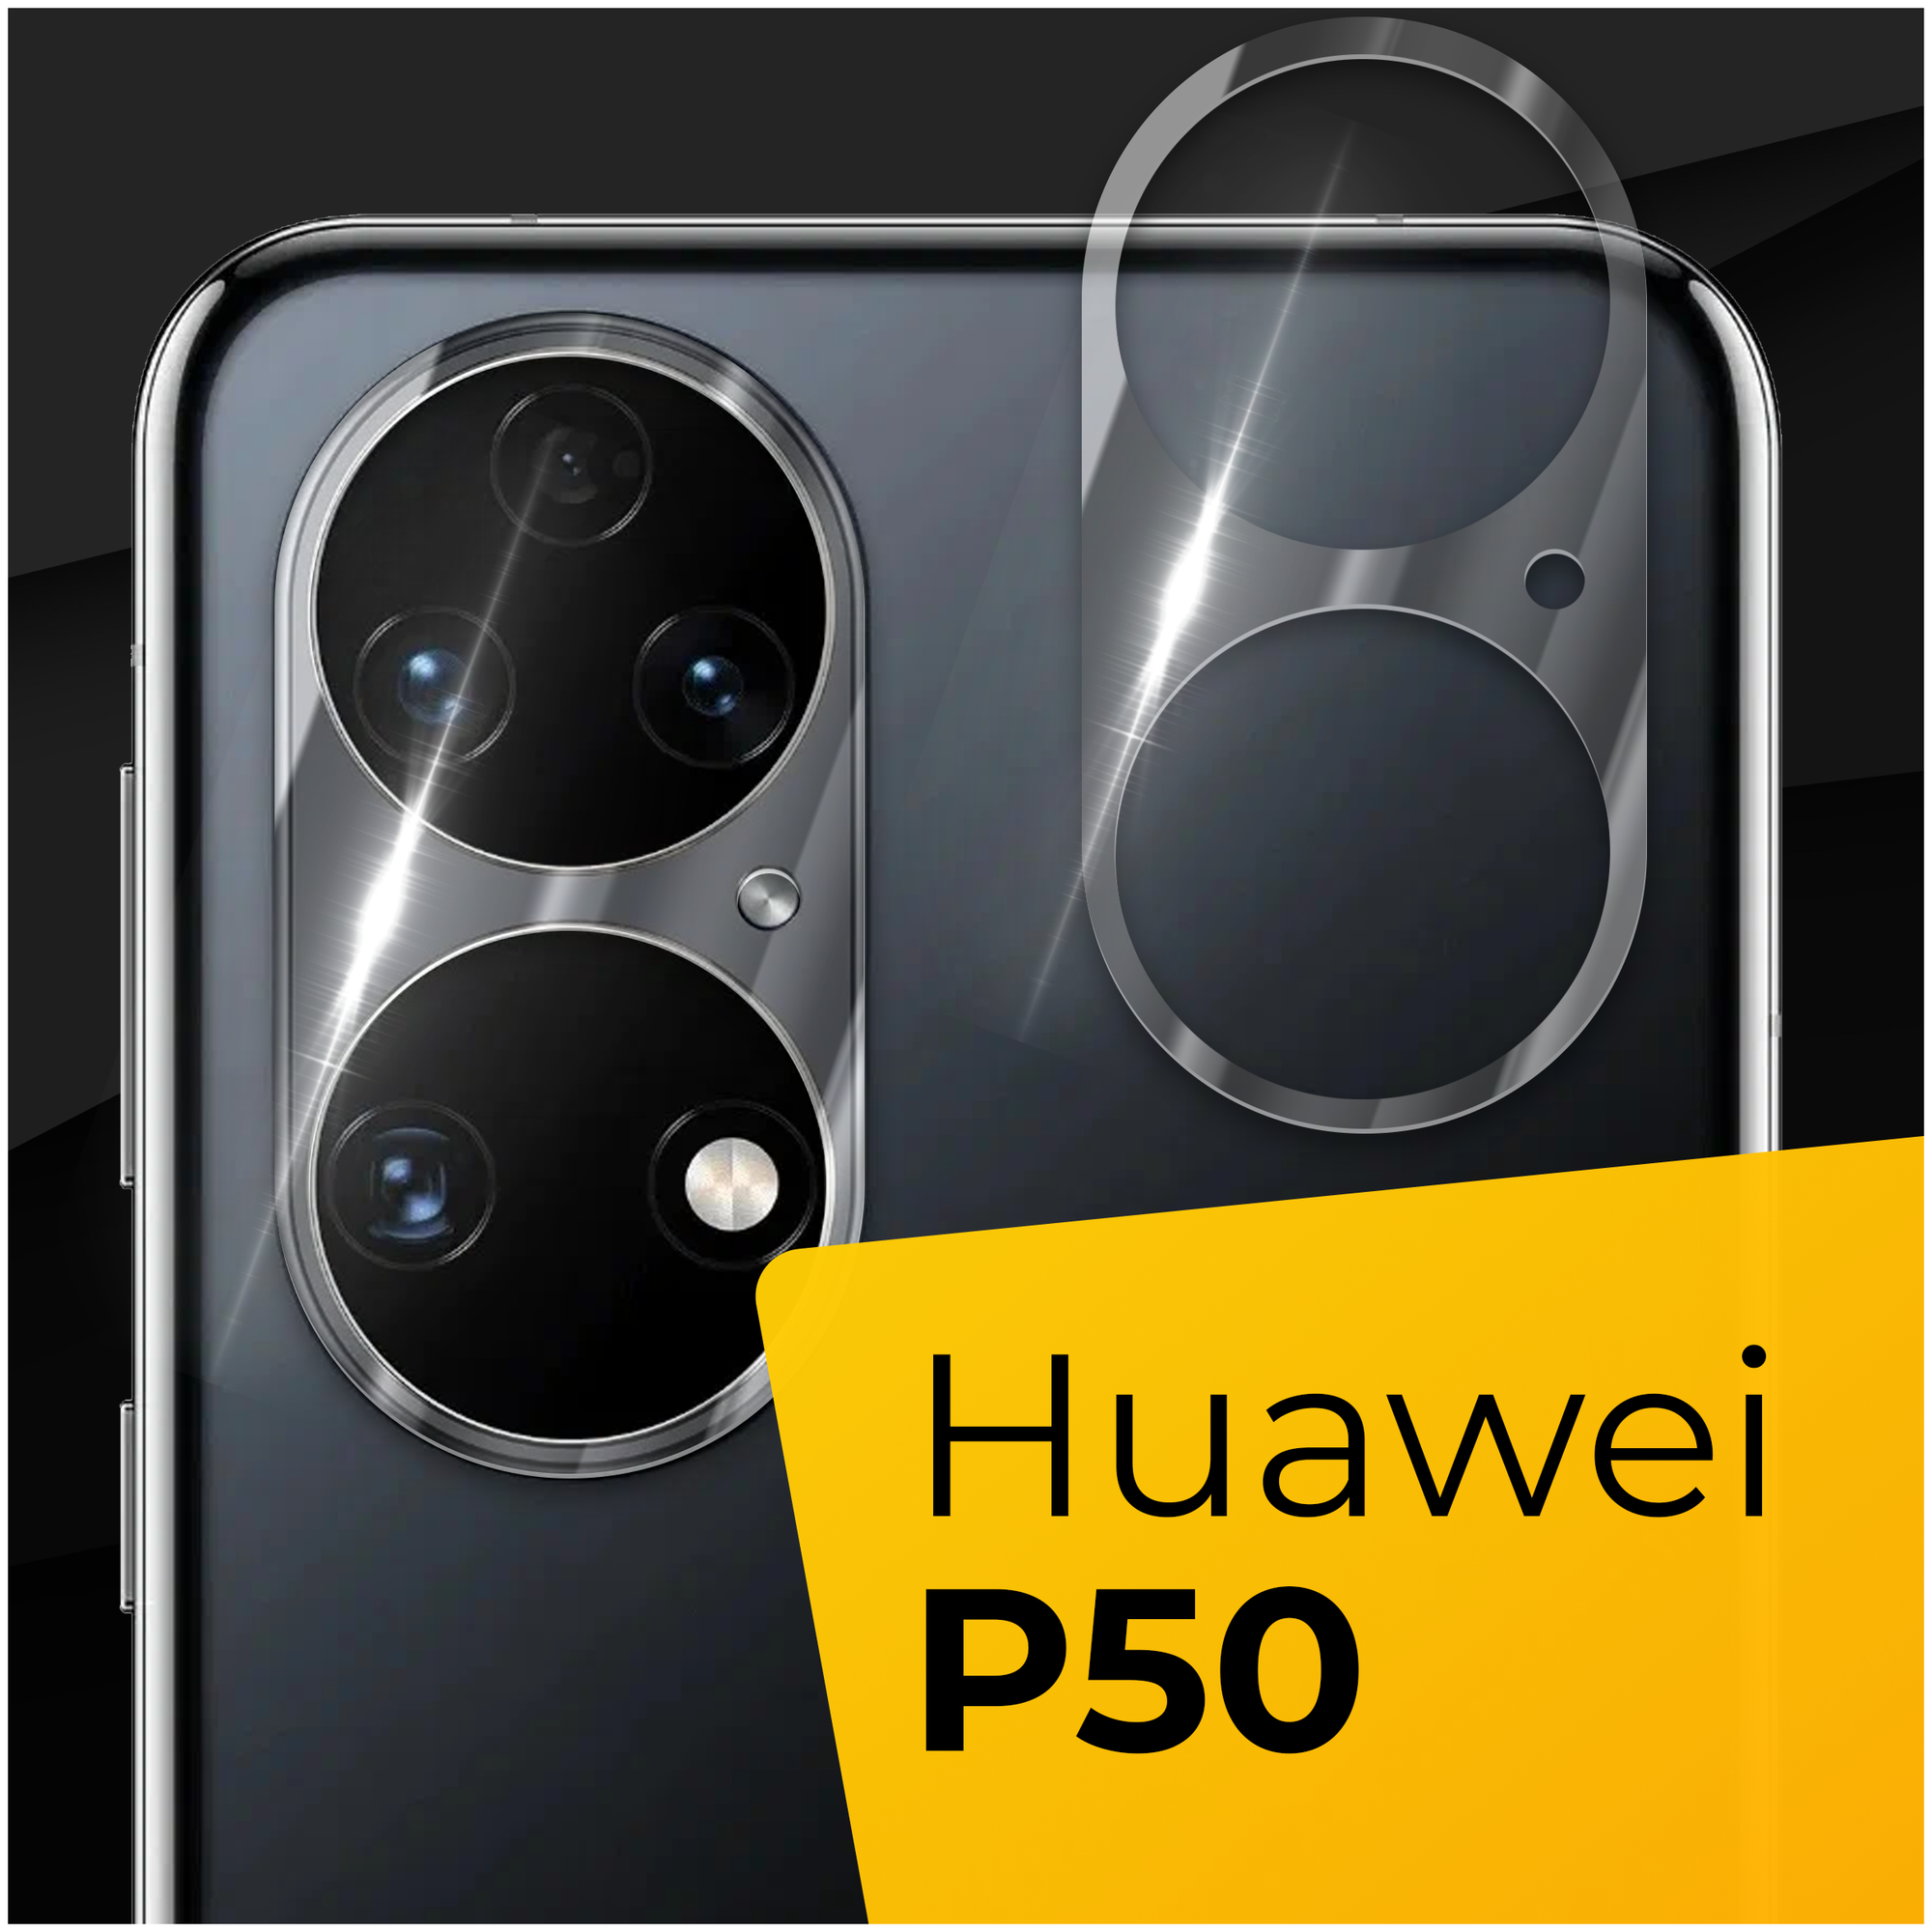 Противоударное защитное стекло для камеры телефона Huawei P50 / Тонкое прозрачное стекло на камеру смартфона Хуавей П50 / Защита задней камеры